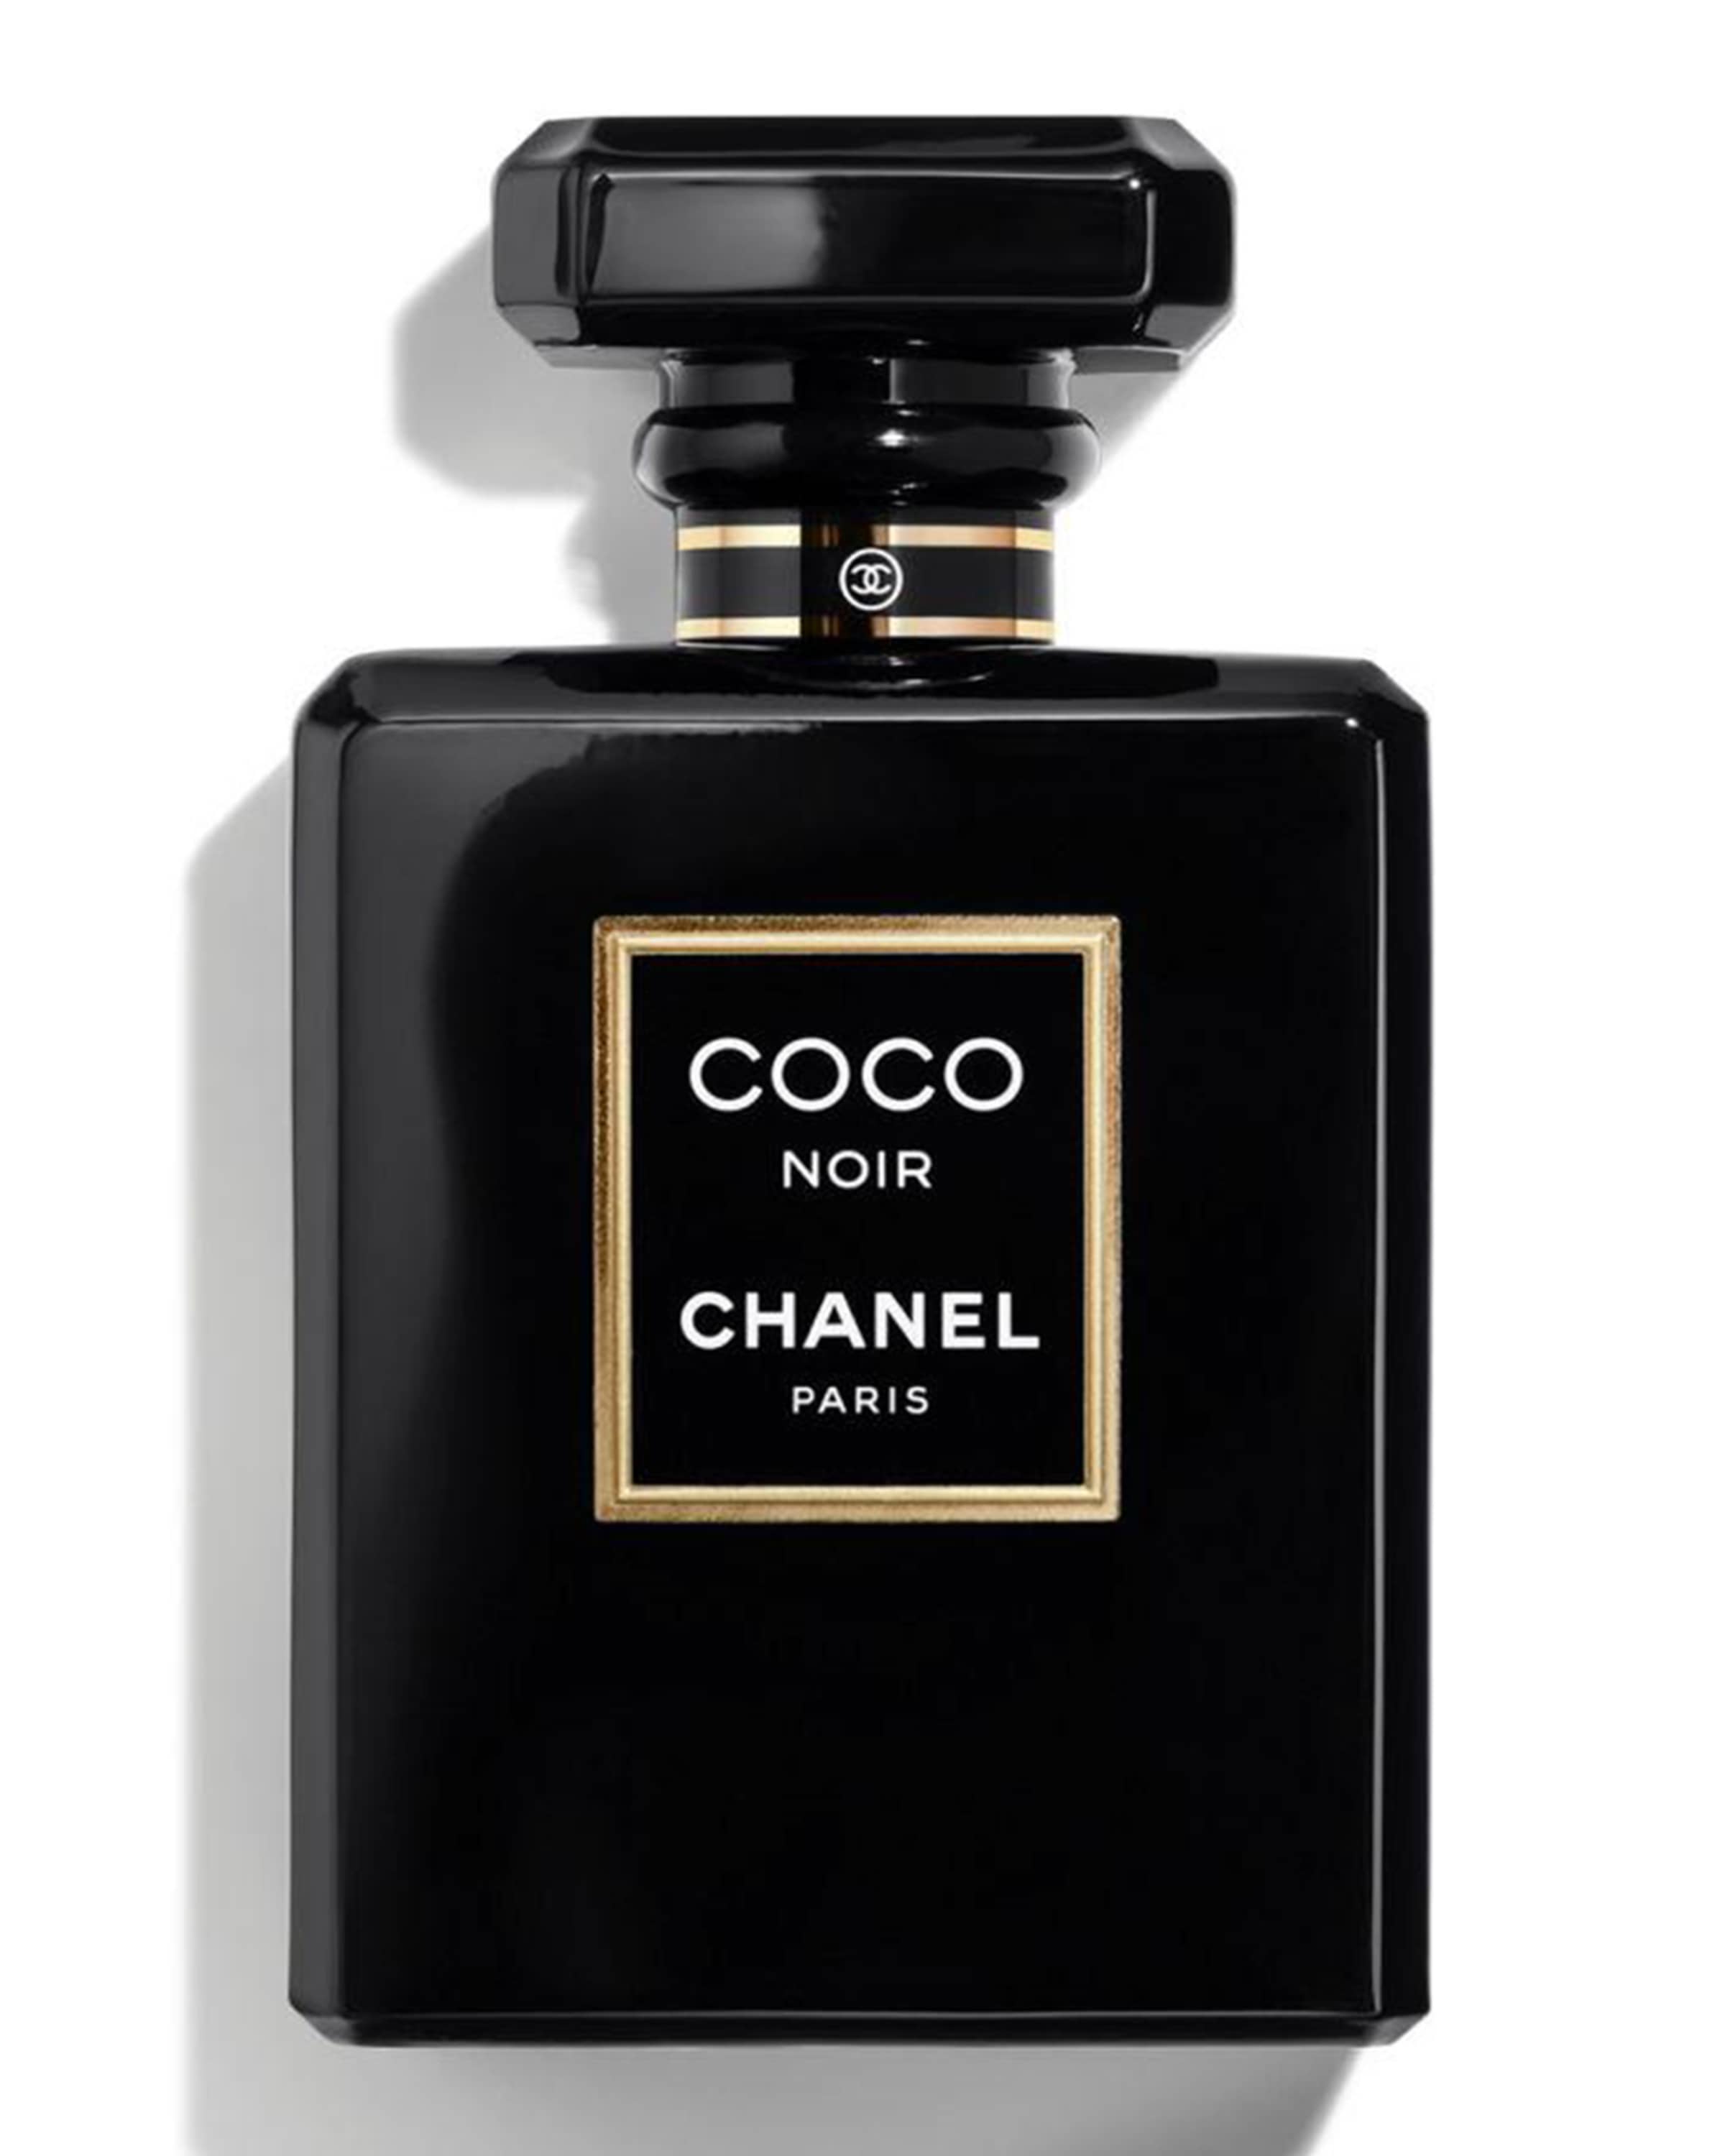 COCO NOIR Parfum, 1.7 oz.